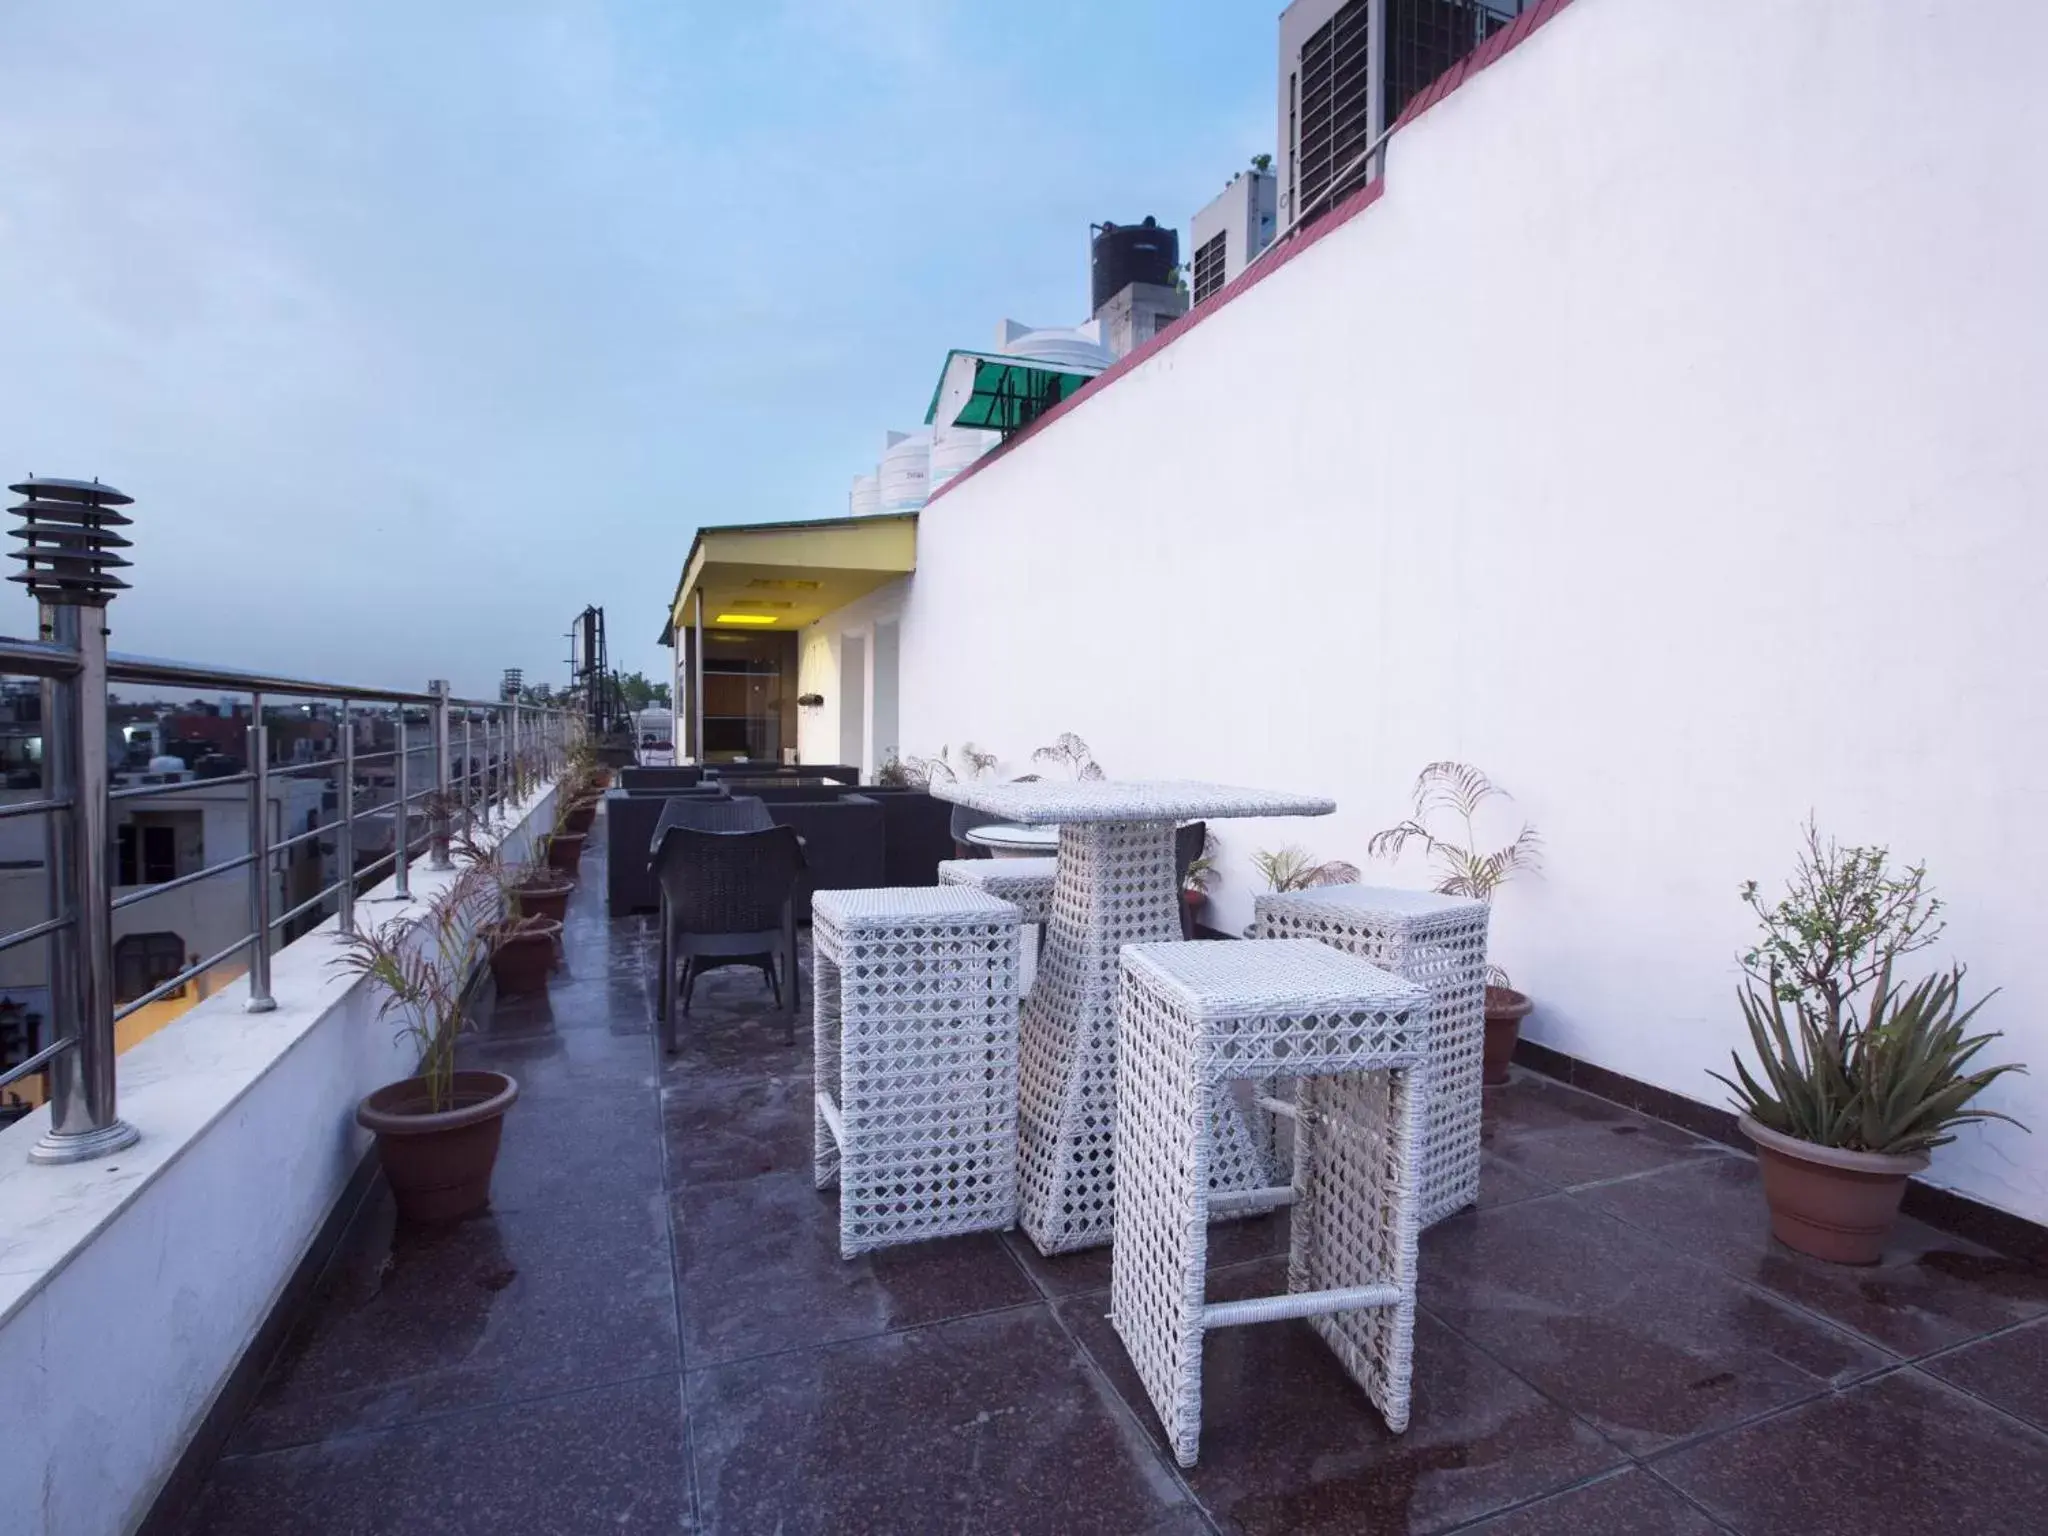 Balcony/Terrace, Patio/Outdoor Area in Hotel Krishna - By RCG Hotels